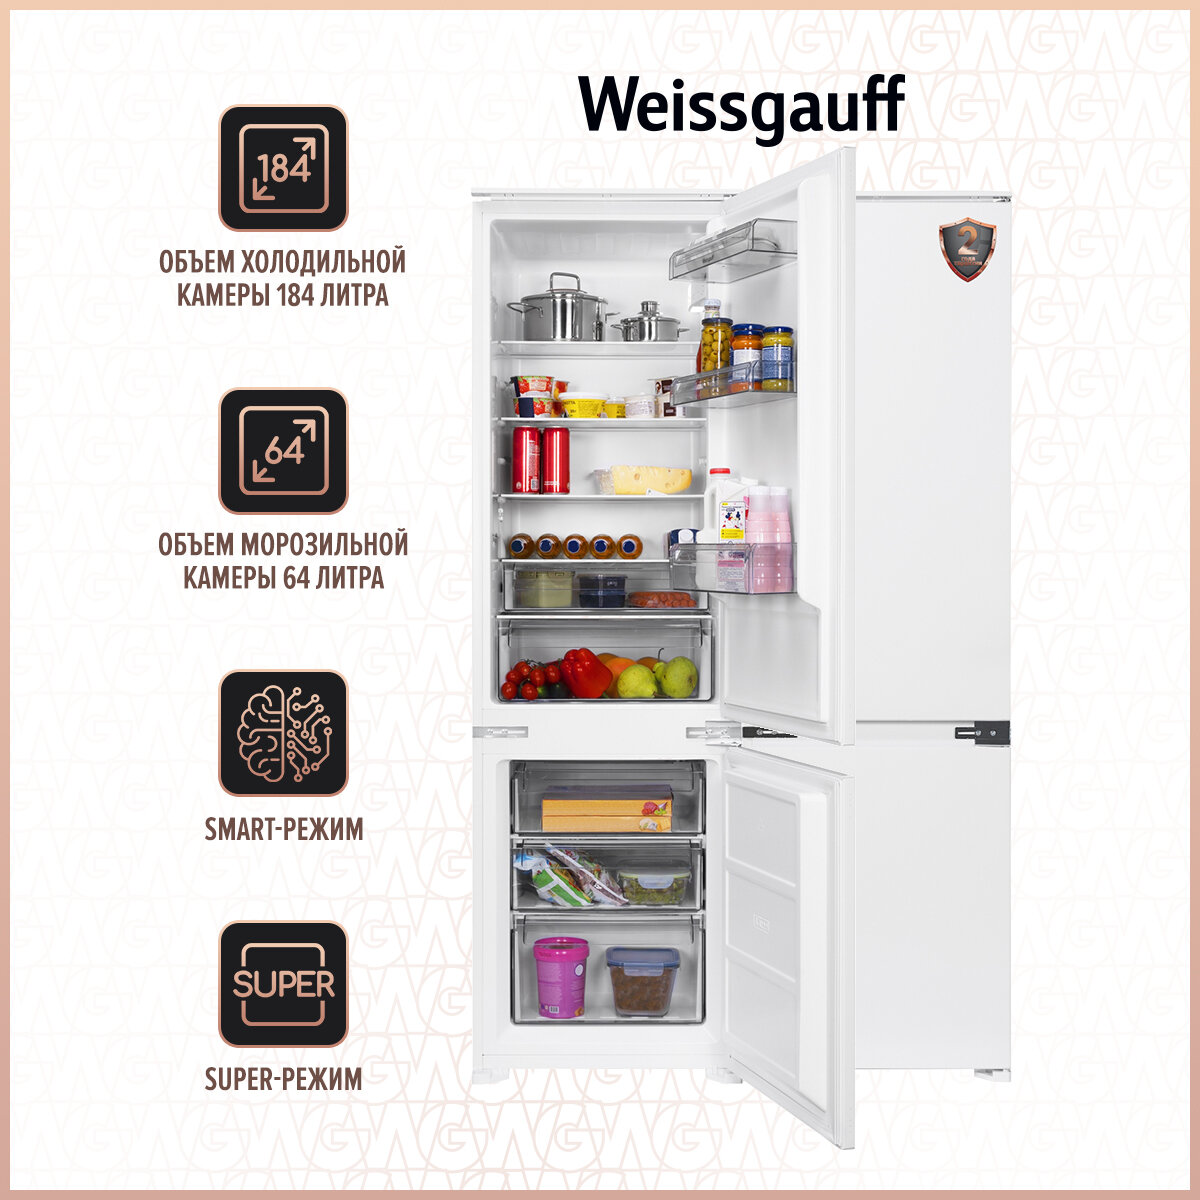 Двухкамерный встраиваемый холодильник Weissgauff Wrki 2801 MD